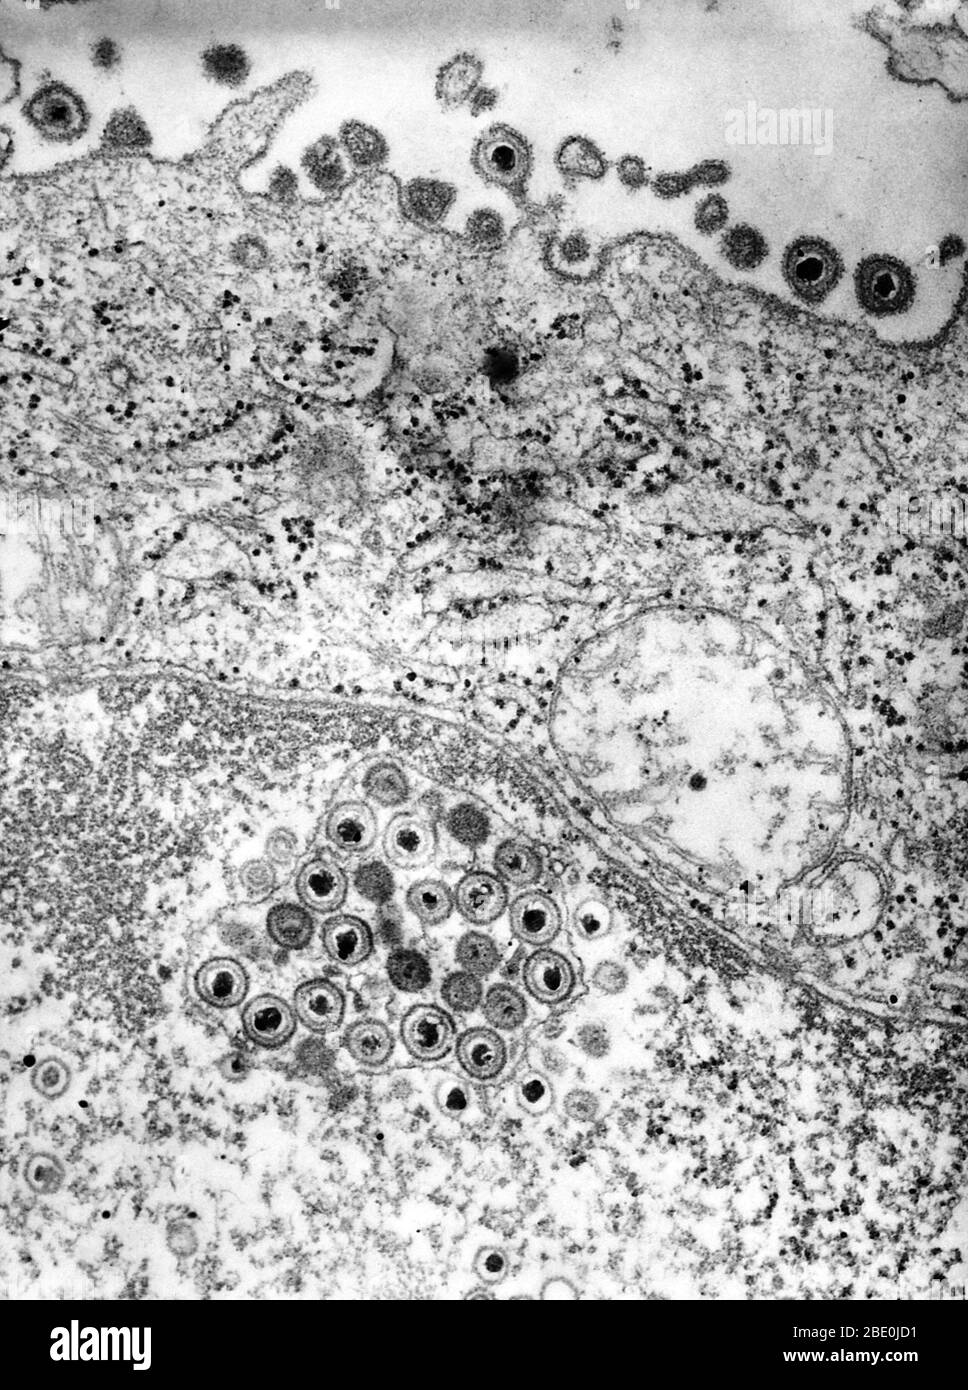 La micrografia elettronica a trasmissione colorata negativa (TEM) rivela la presenza di numerosi virioni herpes simplex, situati sia all'interno del nucleo, sia in questo campione di tessuto. L'herpes genitale è un'infezione genitale causata dal virus herpes simplex (HSV). La maggior parte degli individui che trasportano herpes sono ignari che sono stati infettati e molti non soffriranno mai un'epidemia, che coinvolge le vesciche simili alle piaghe fredde. Mentre non c'è cura per herpes, nel corso del tempo i sintomi sono sempre più blandi e le epidemie sono sempre più frequenti. La manifestazione tipica di un'infezione primaria è indizi Foto Stock